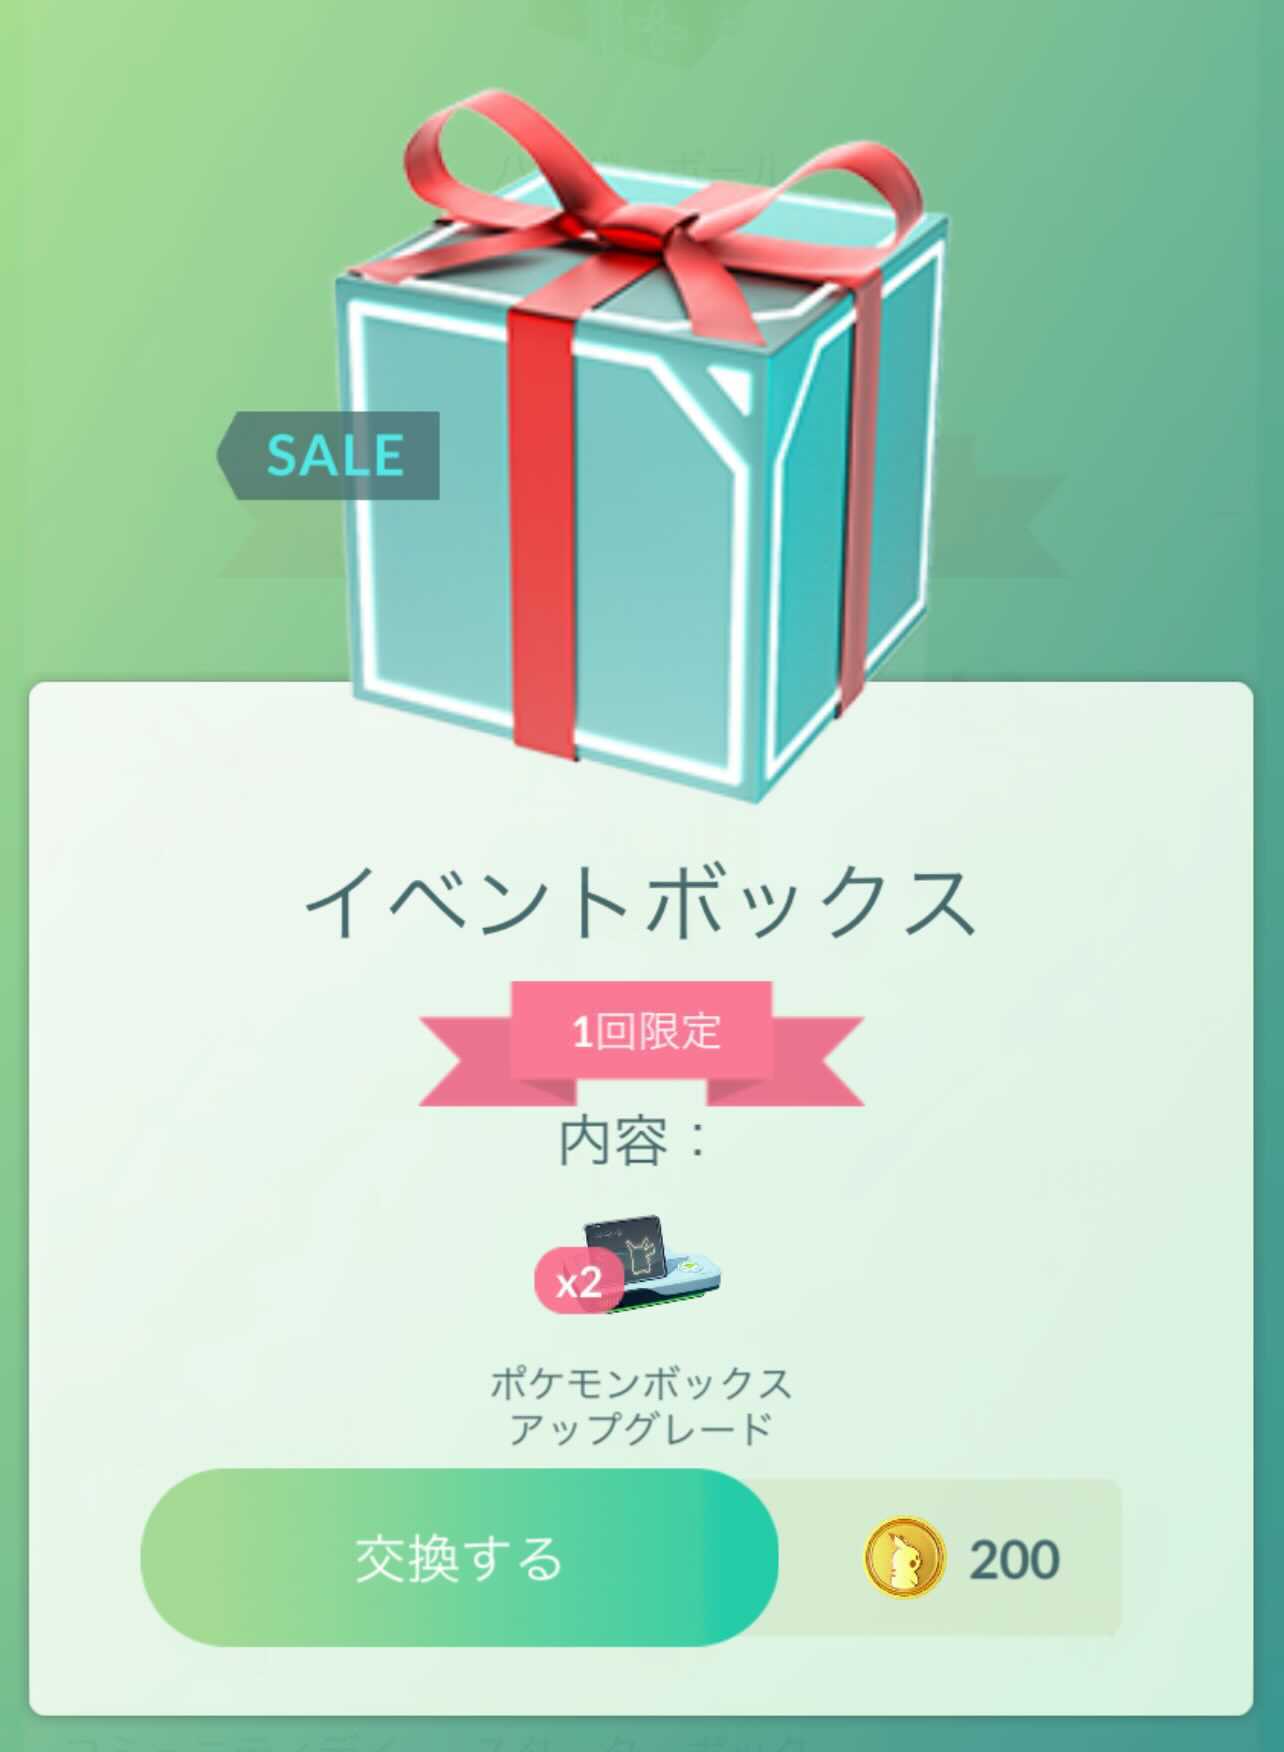 ポケモンgo 期間限定ボックス拡張アップグレード半額セール Gible Community Day準備中 Engadget 日本版